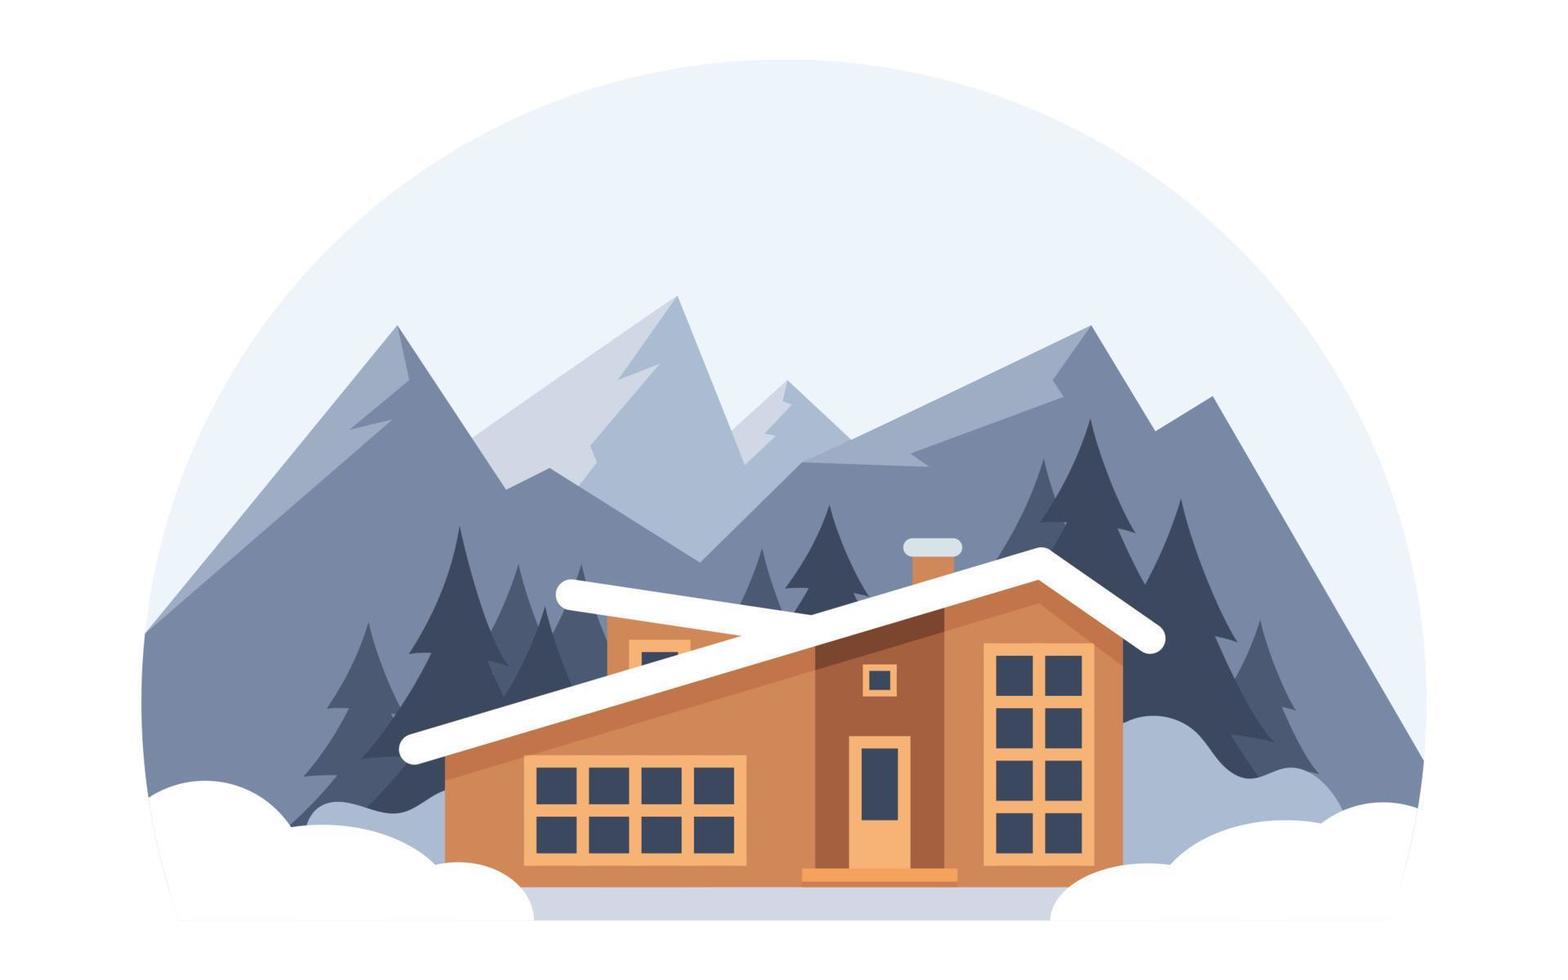 paisagem de montanha de inverno com casa grande para turistas. férias de inverno nas montanhas, estações de esqui, aluguel de casas. ilustração em vetor plana.